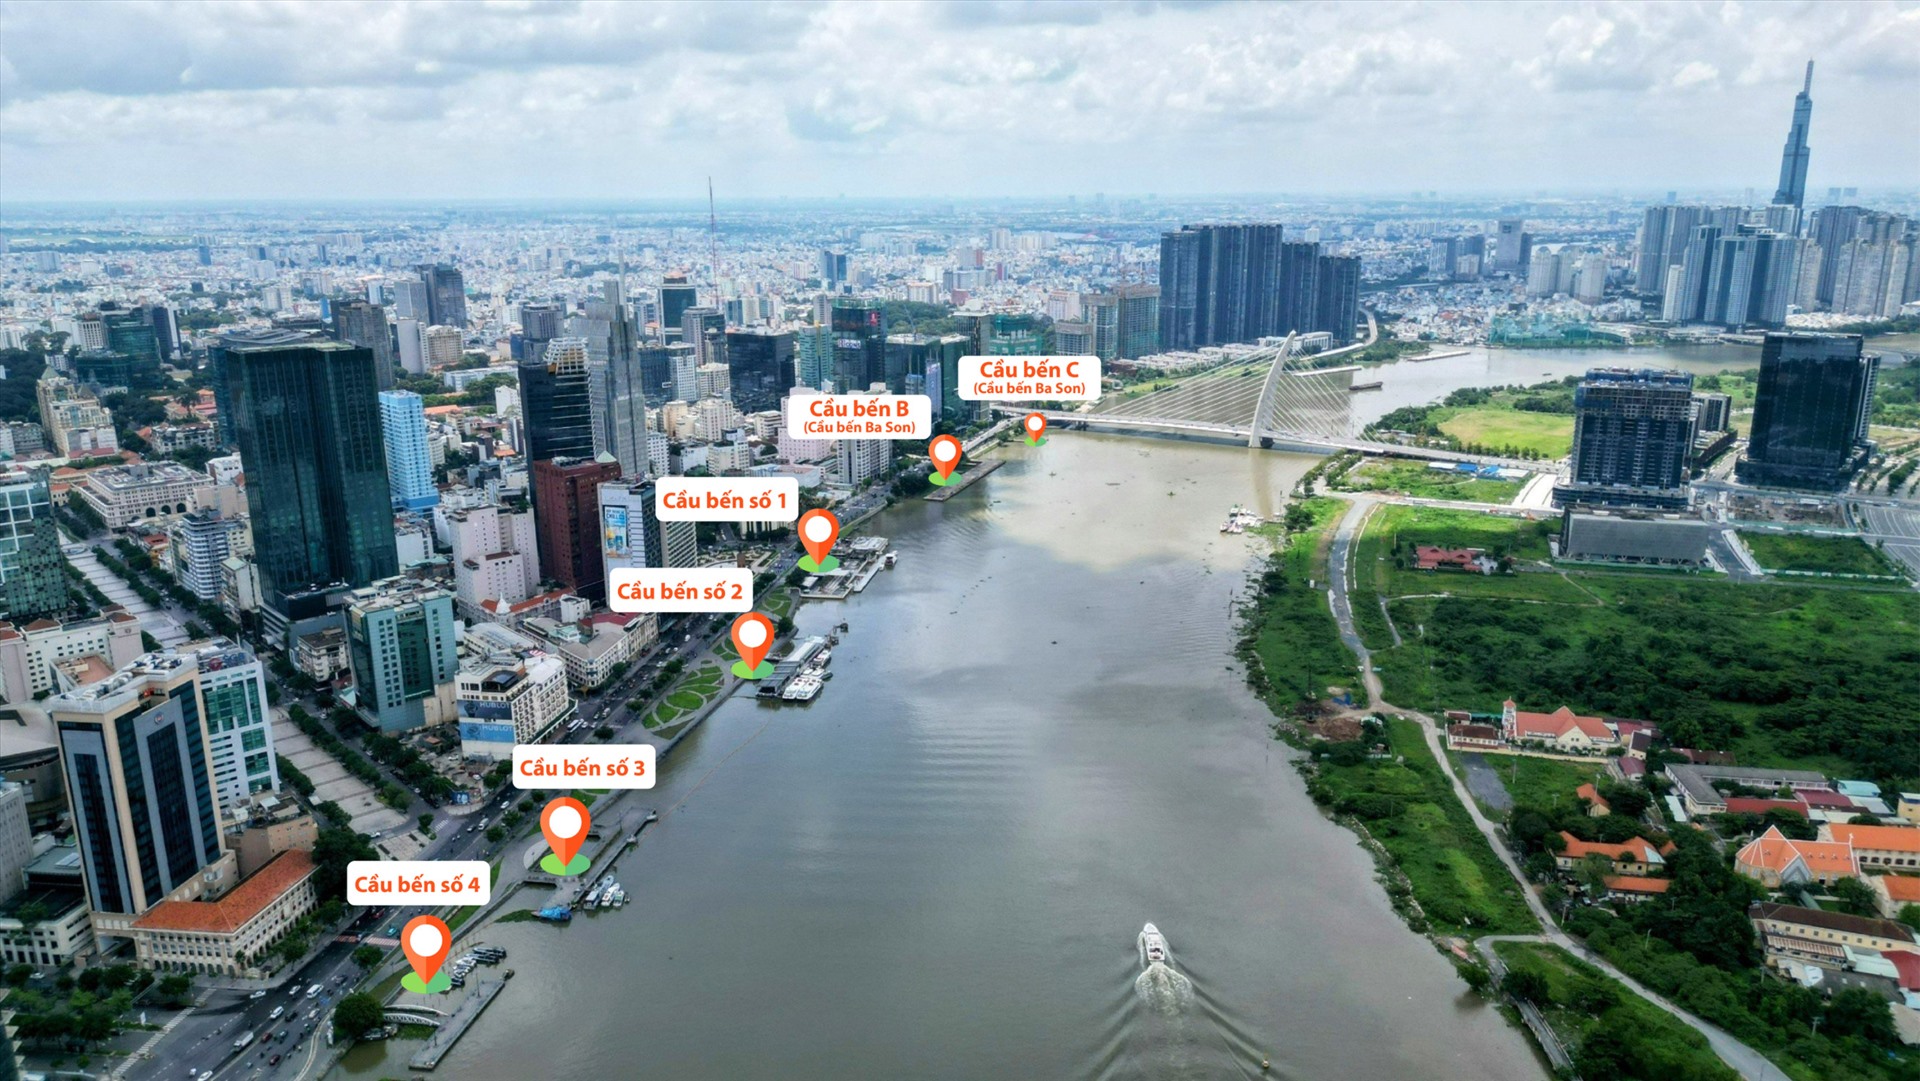 Công viên bến Bạch Đằng có chiều dài 1,3km, rộng 23.400m2, nằm dọc theo trục đường Tôn Đức Thắng (Quận 1) hướng ra sông Sài Gòn, nằm bên cạnh bến tàu cao tốc Bạch Đằng. 